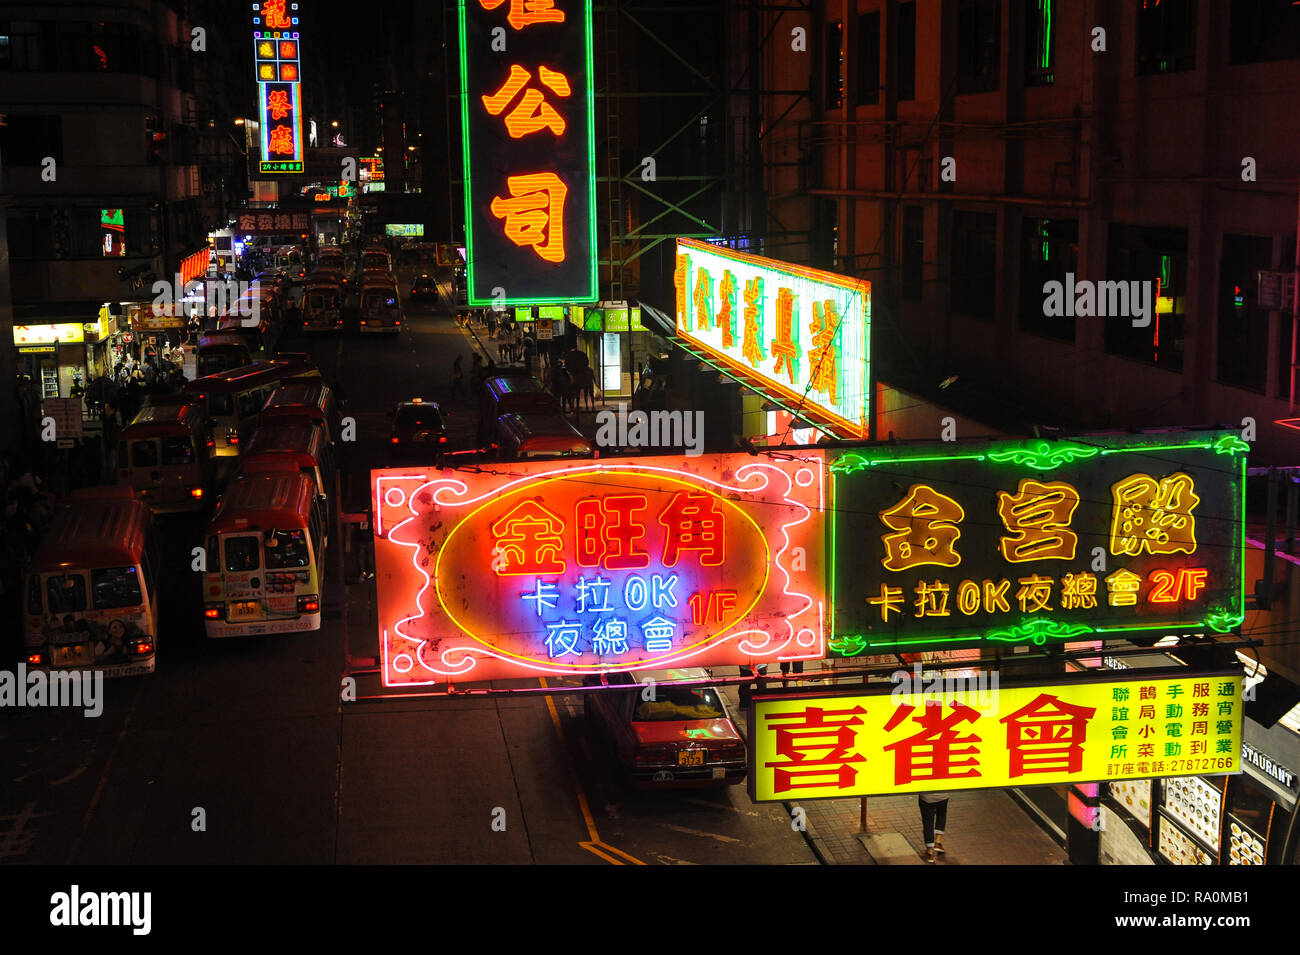 11.10.2014, Hongkong, Volksrepublik China, Asien - Bunte Neonschilder beleuchten eine Strasse in Kowloons Arbeiterviertel Mong Kok. 0SL141011D004CARO. Foto Stock